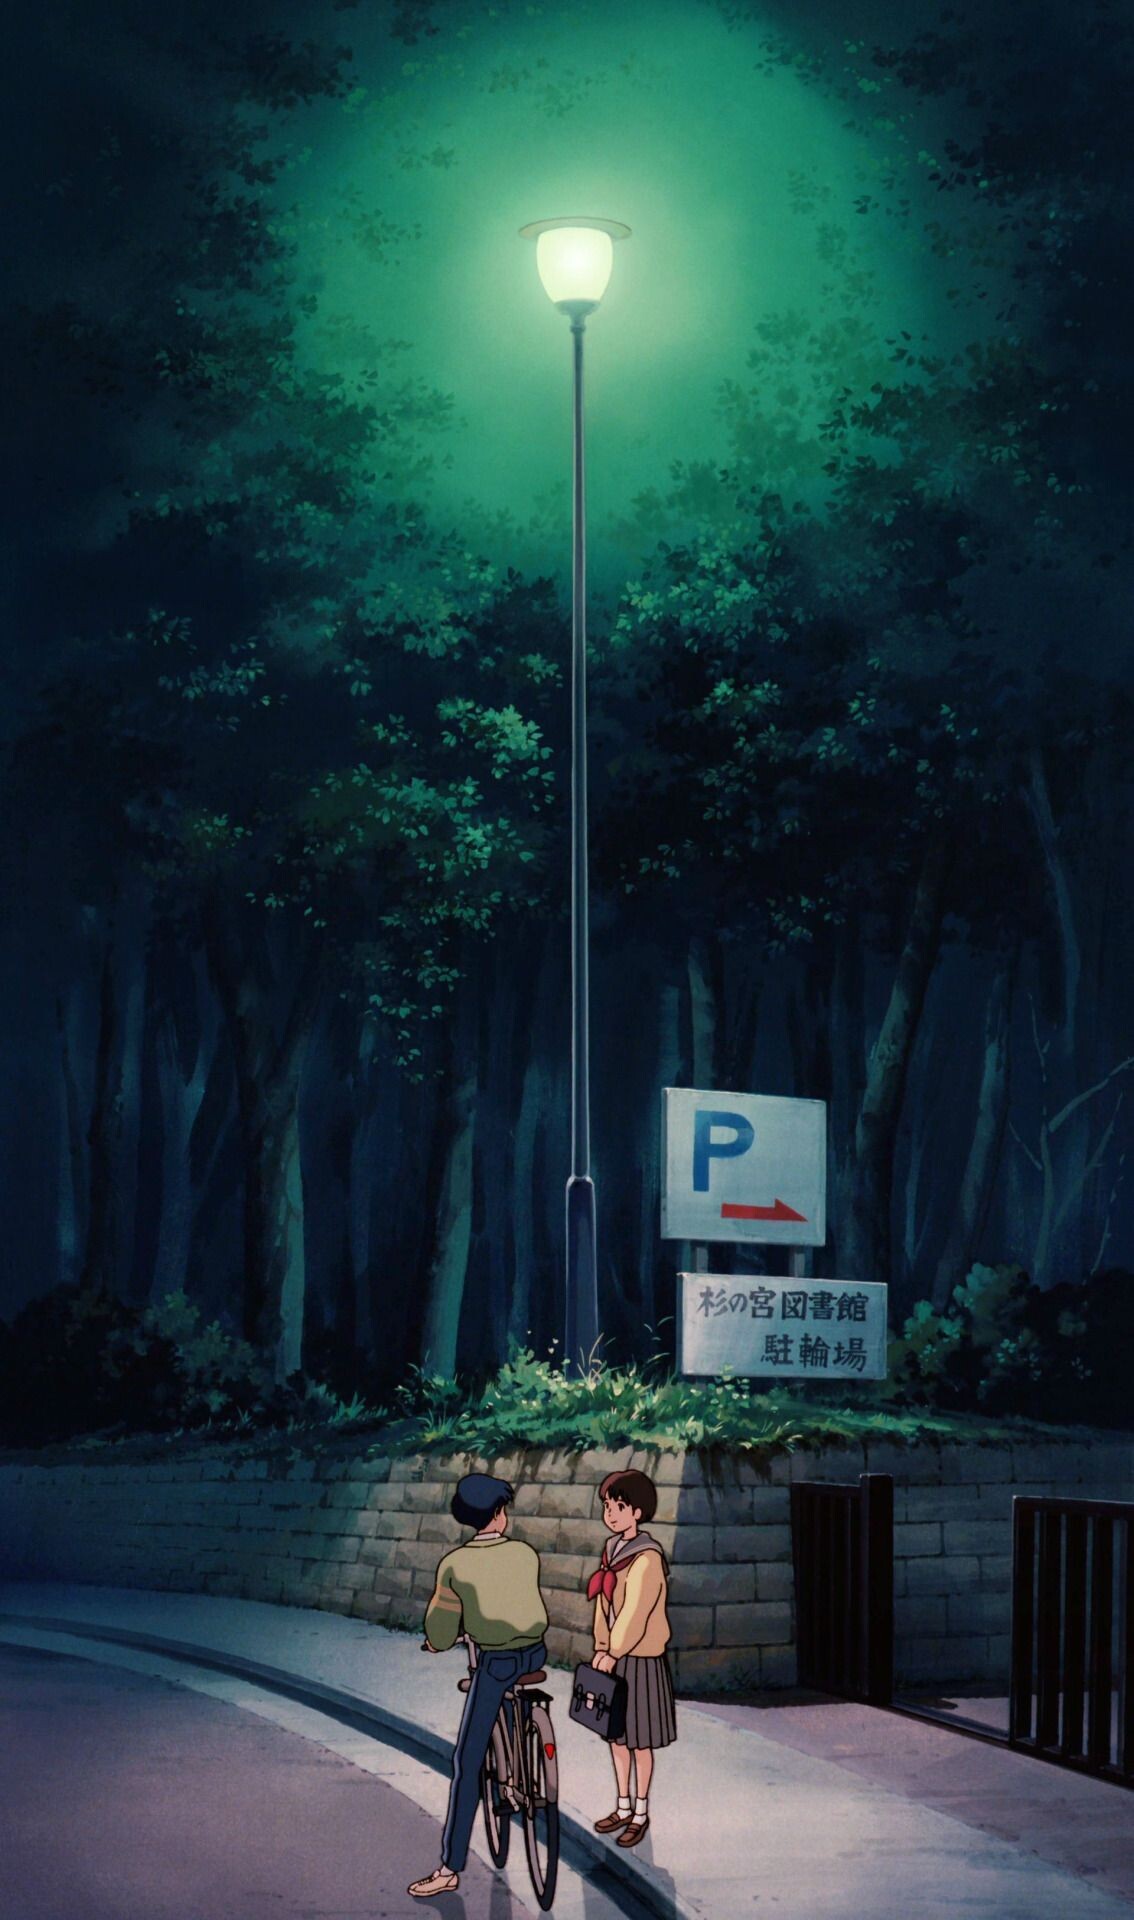 Studio Ghibli: Whisper of the Heart, Based on the 1989 manga of the same name by Aoi Hiiragi. 1140x1920 HD Wallpaper.